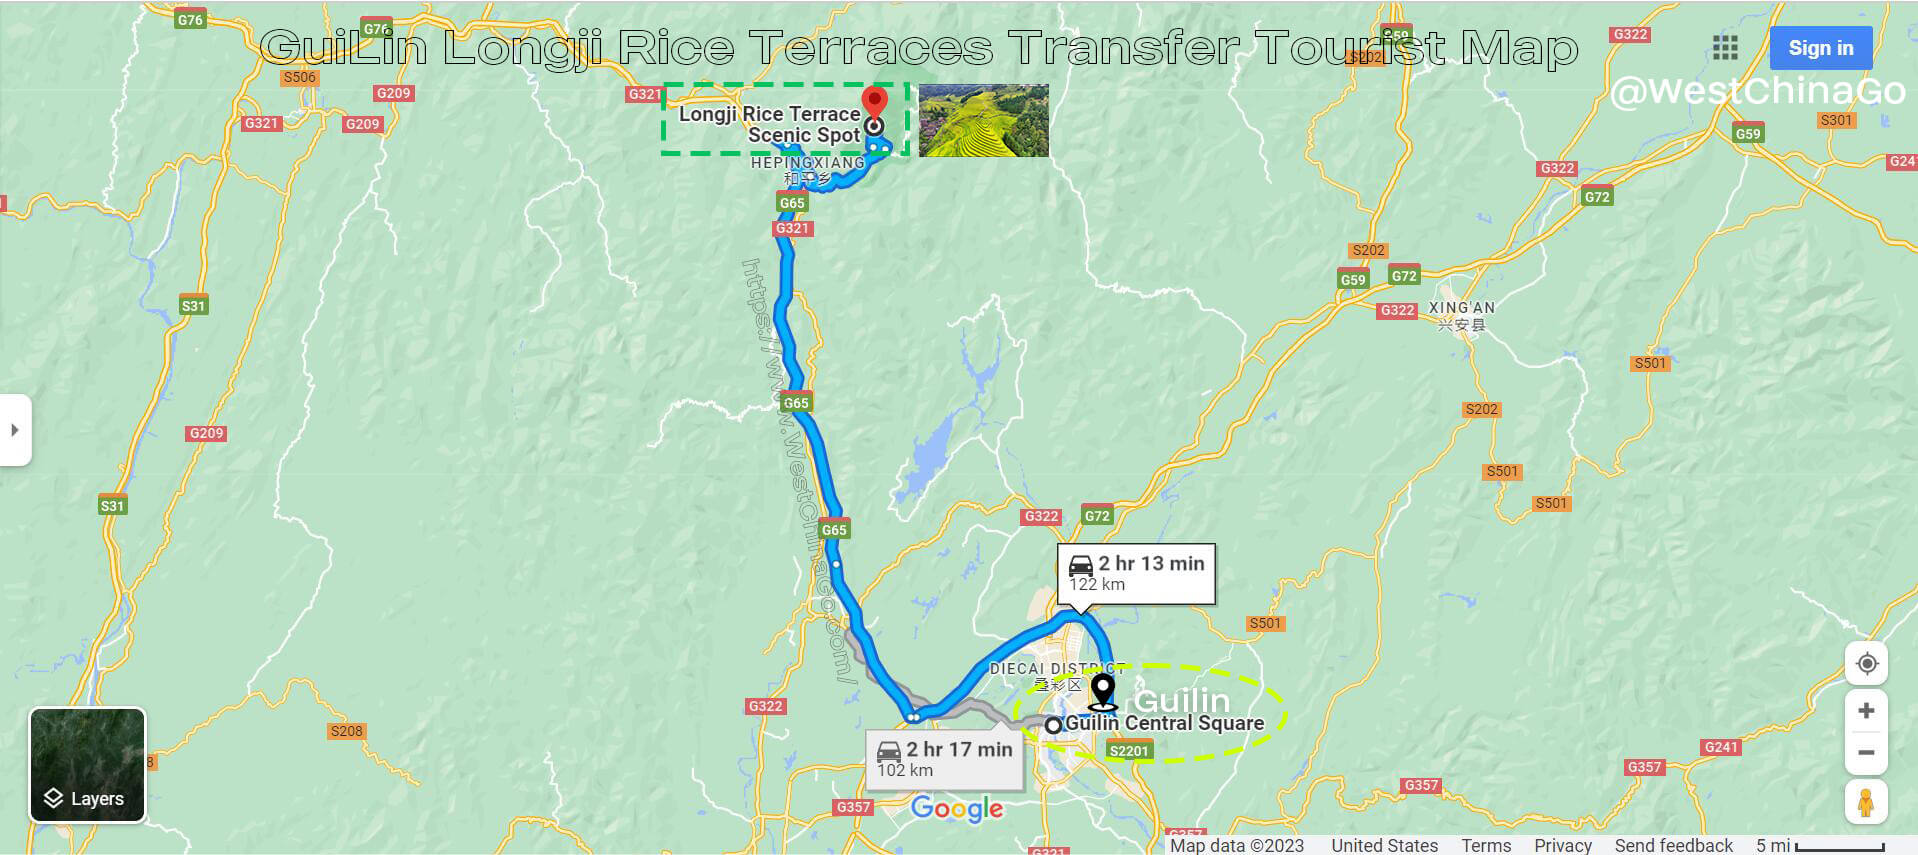 Guilin Yangshuo Transfer Tourist Map